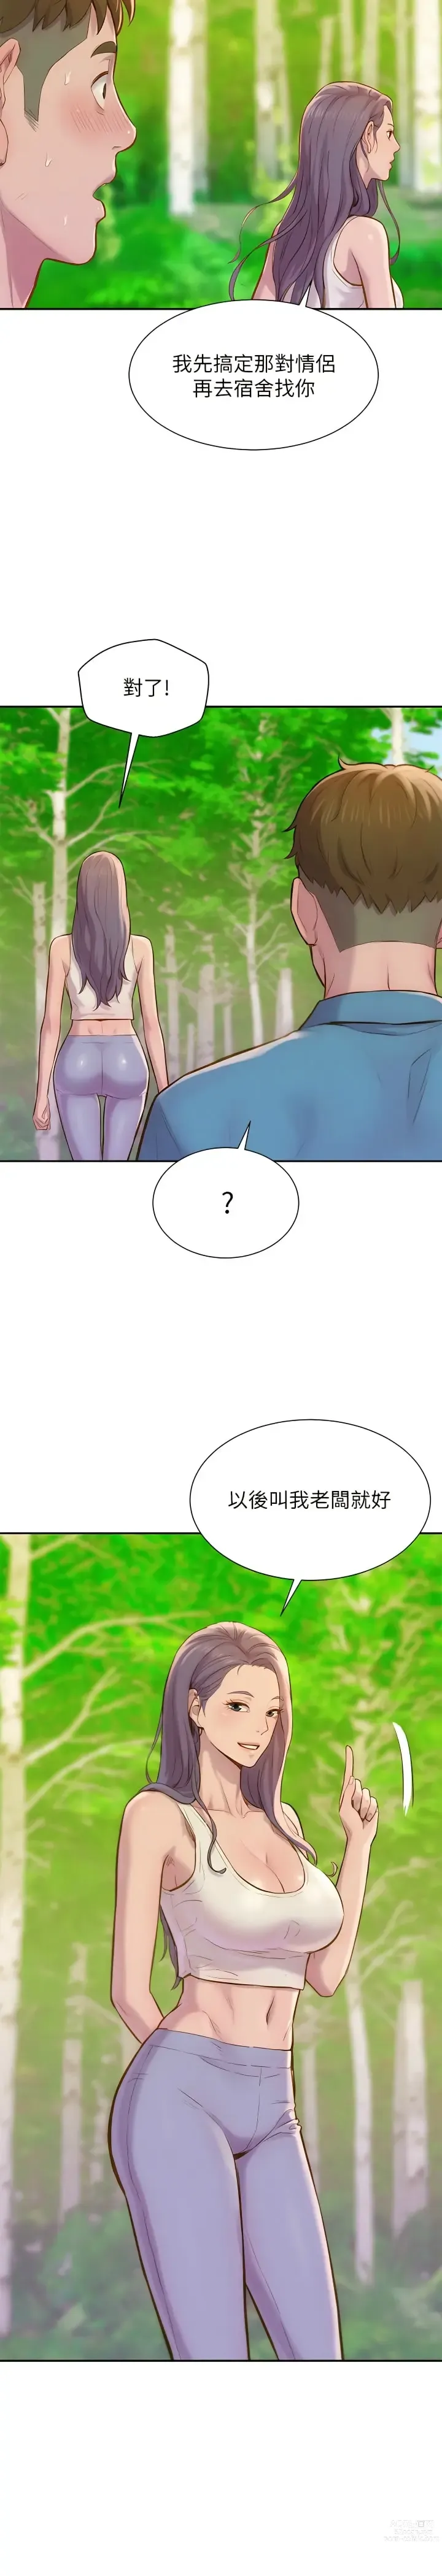 Page 27 of manga 浪漫露营／Romance Camping